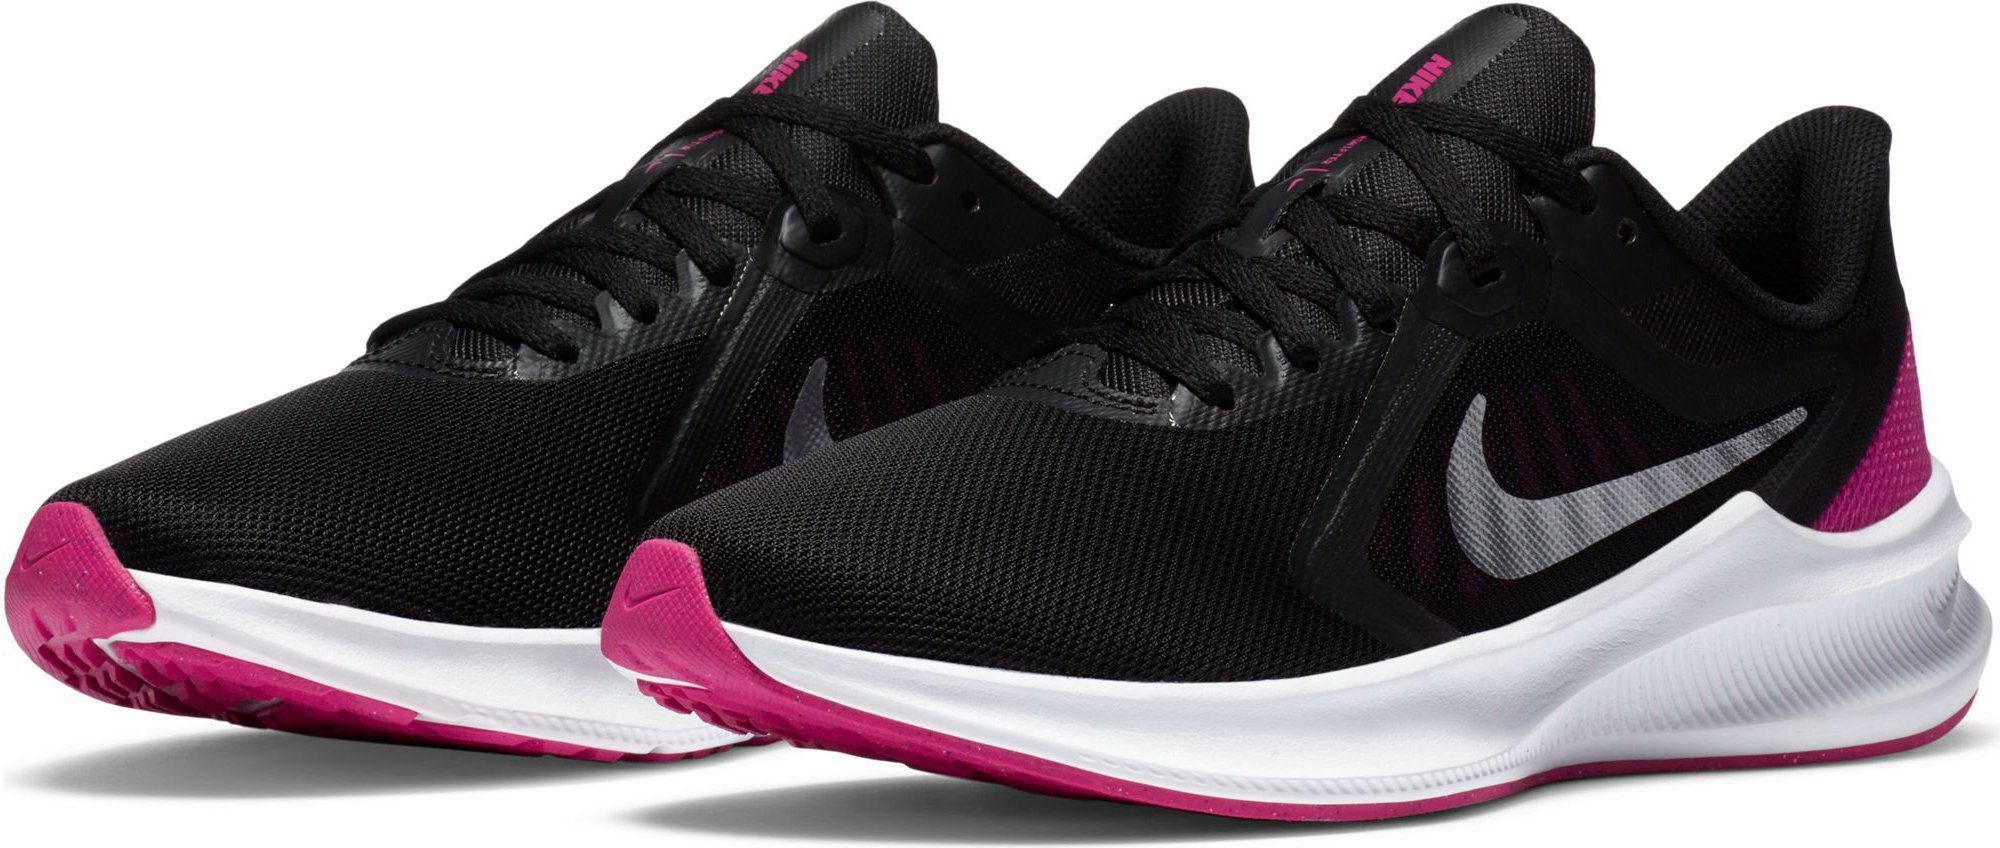 Nike »Wmns Downshifter 10« Laufschuh, Mesh im Vorfuß sorgt für  Atmungsaktivität bei geringem Gewicht online kaufen | OTTO